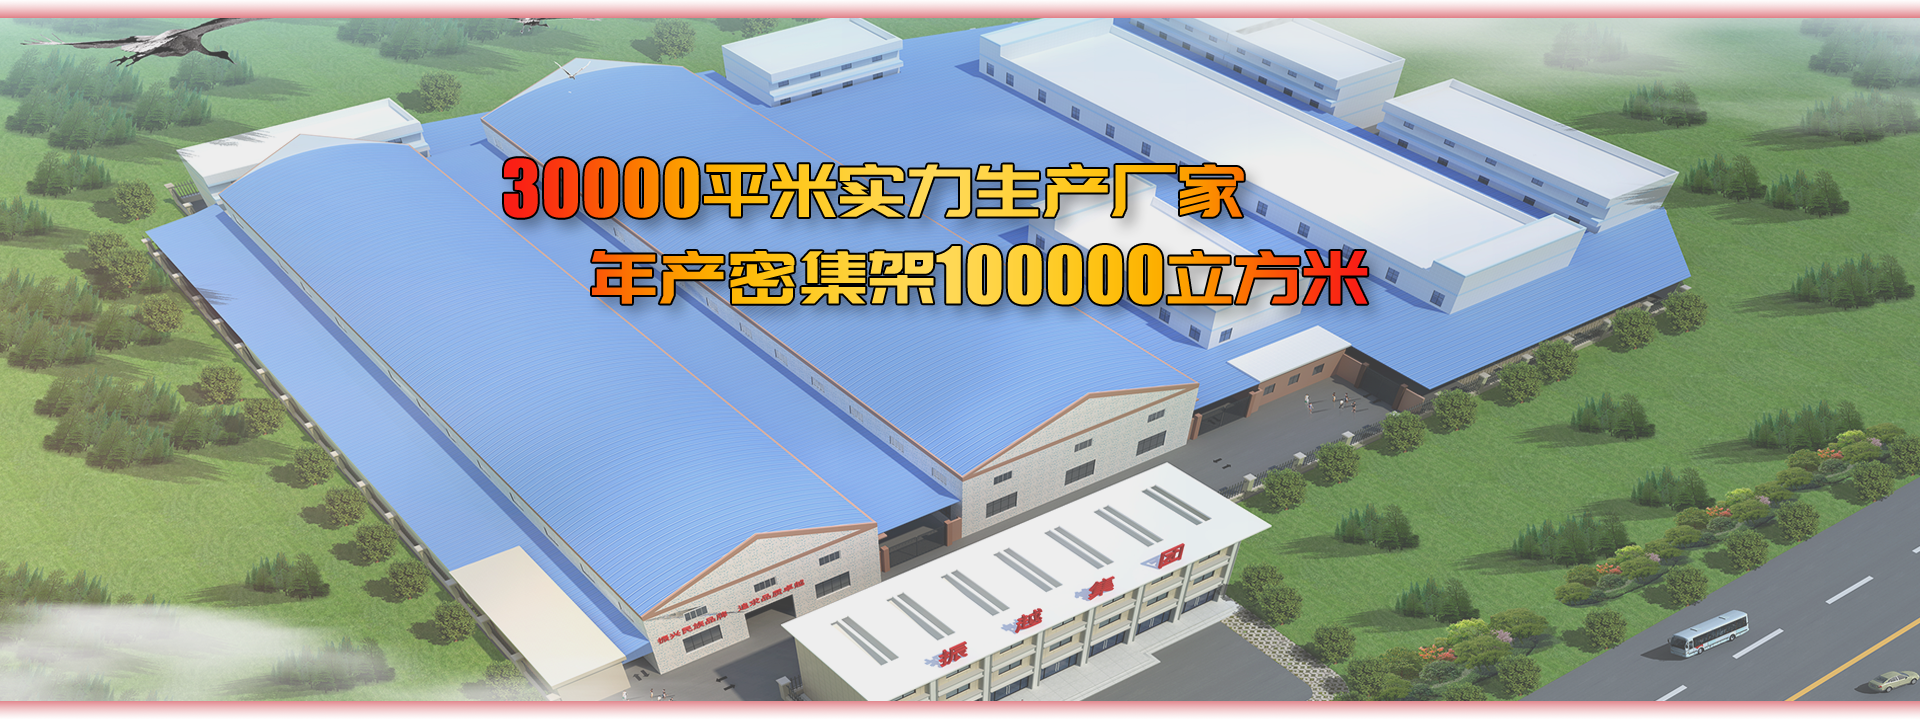 密集架生产厂家-30000平方米实力生产厂家